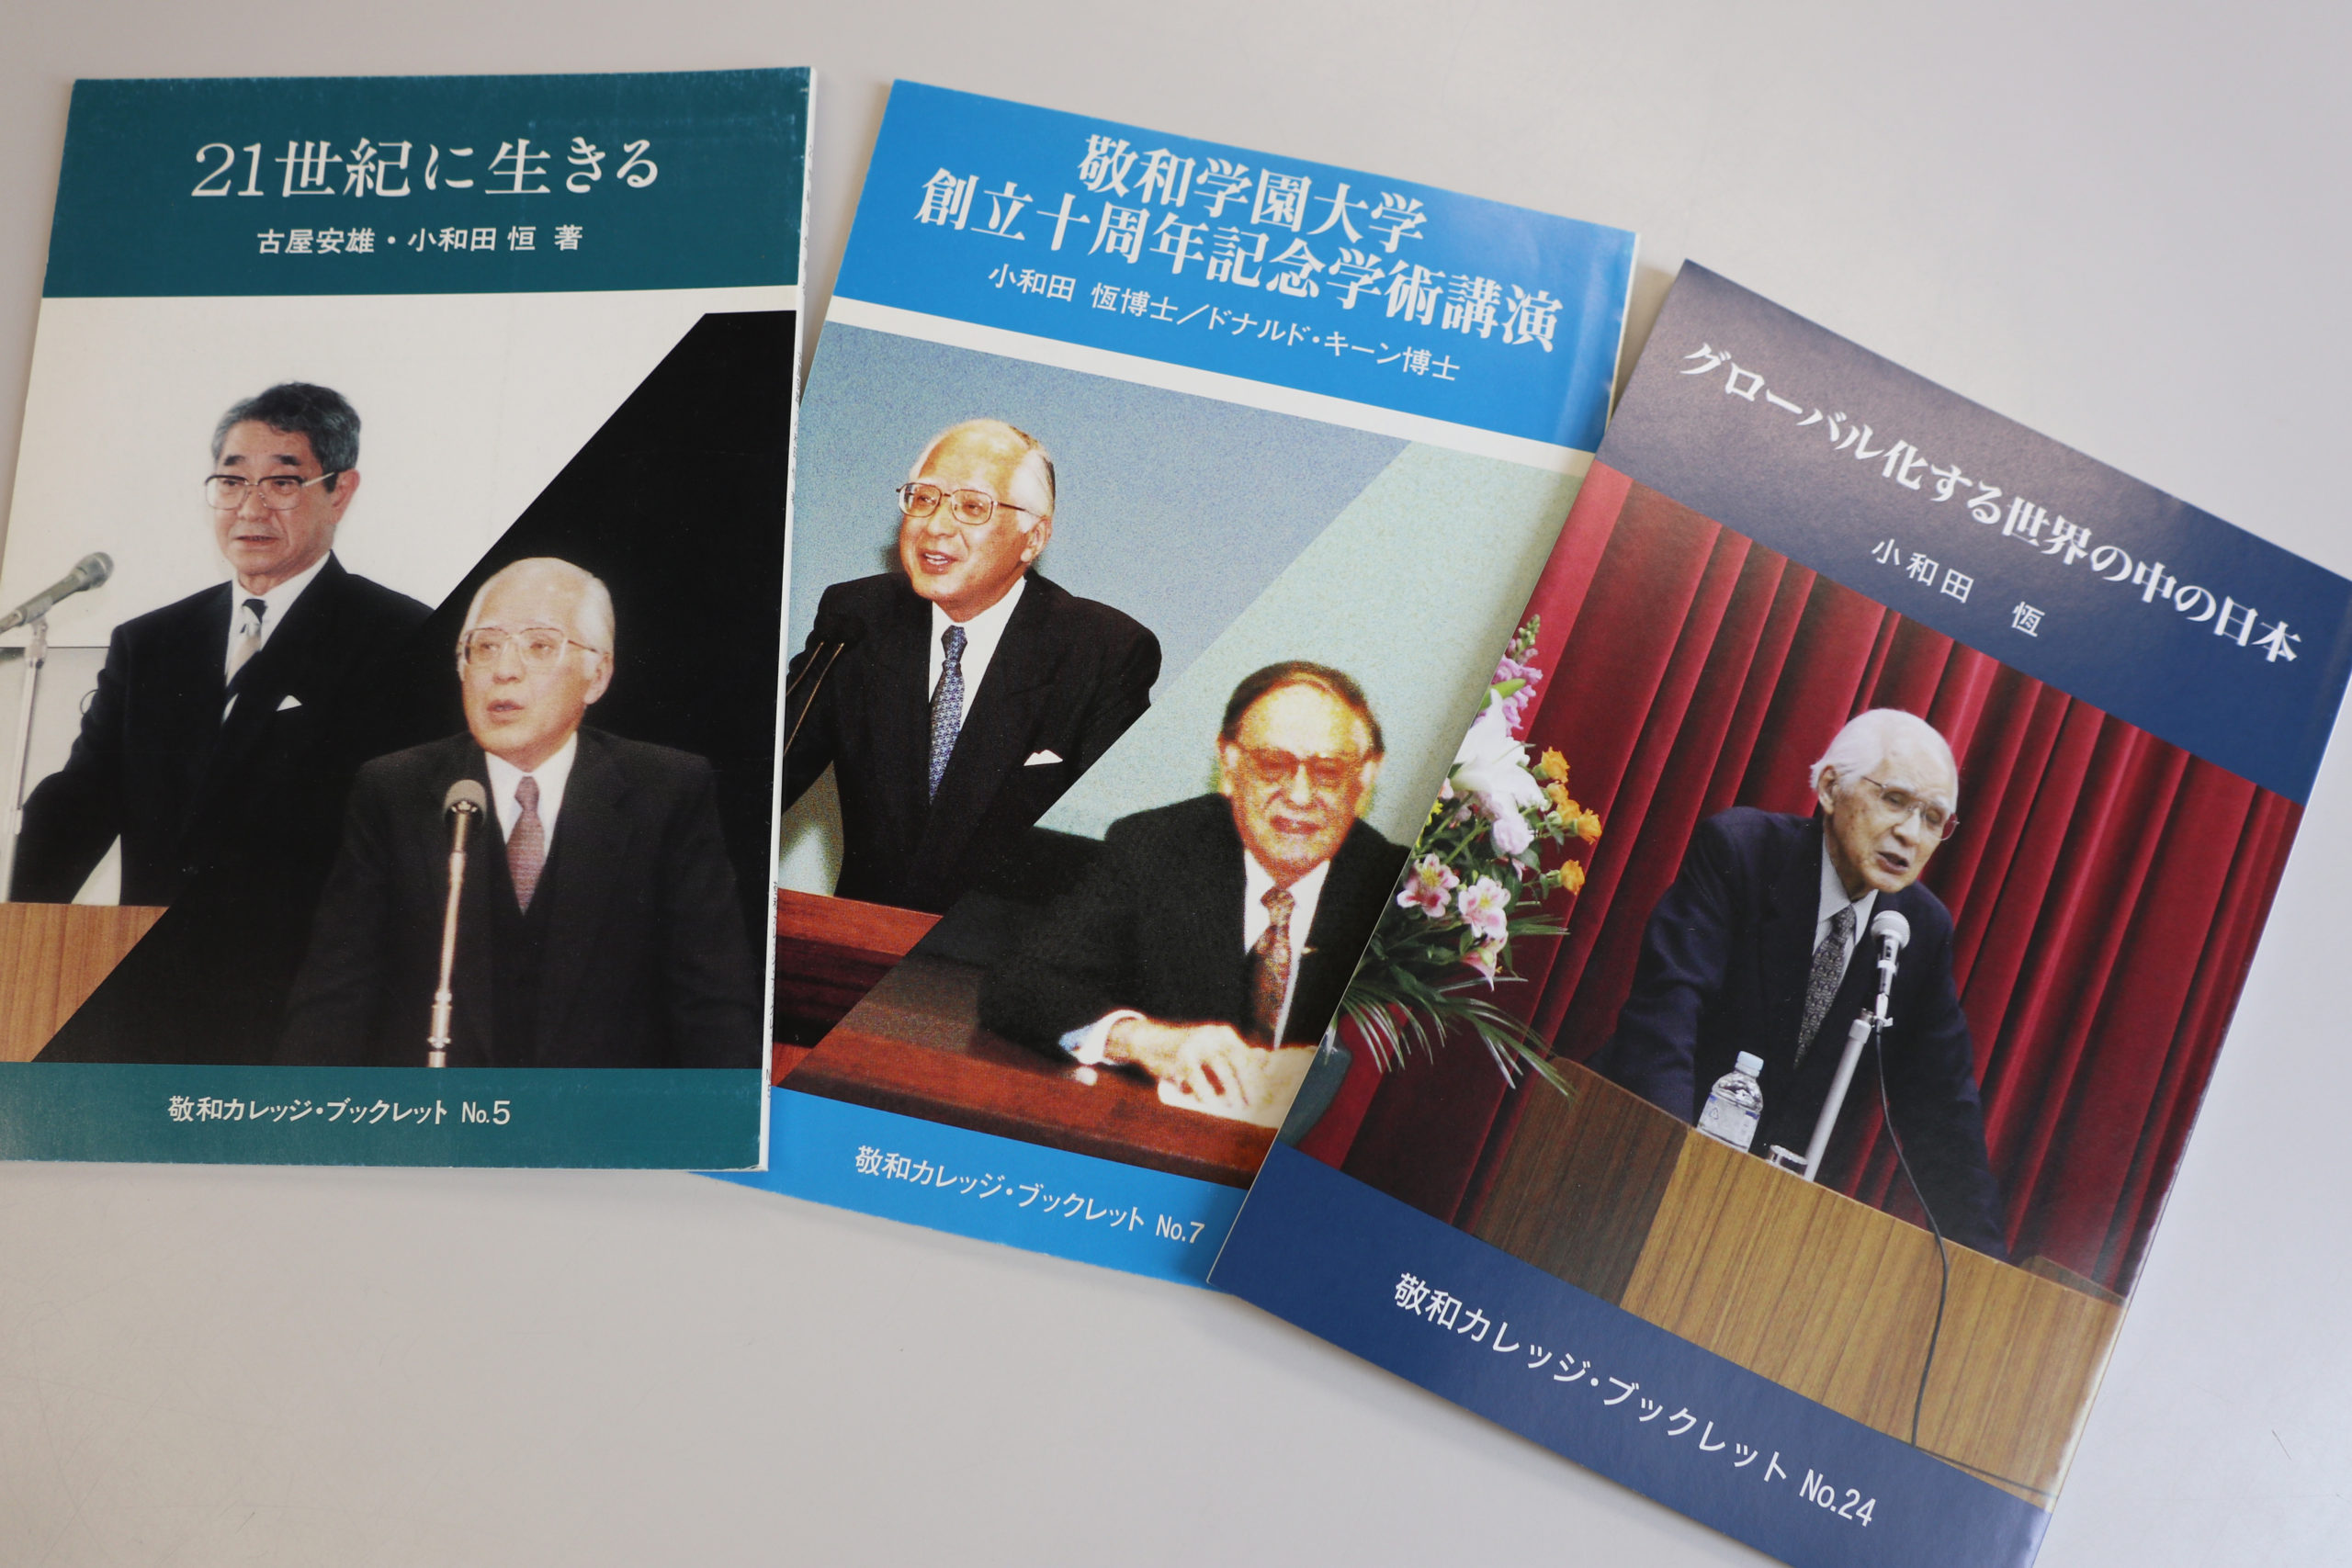 小和田先生の著書である3冊の敬和カレッジ・ブックレット